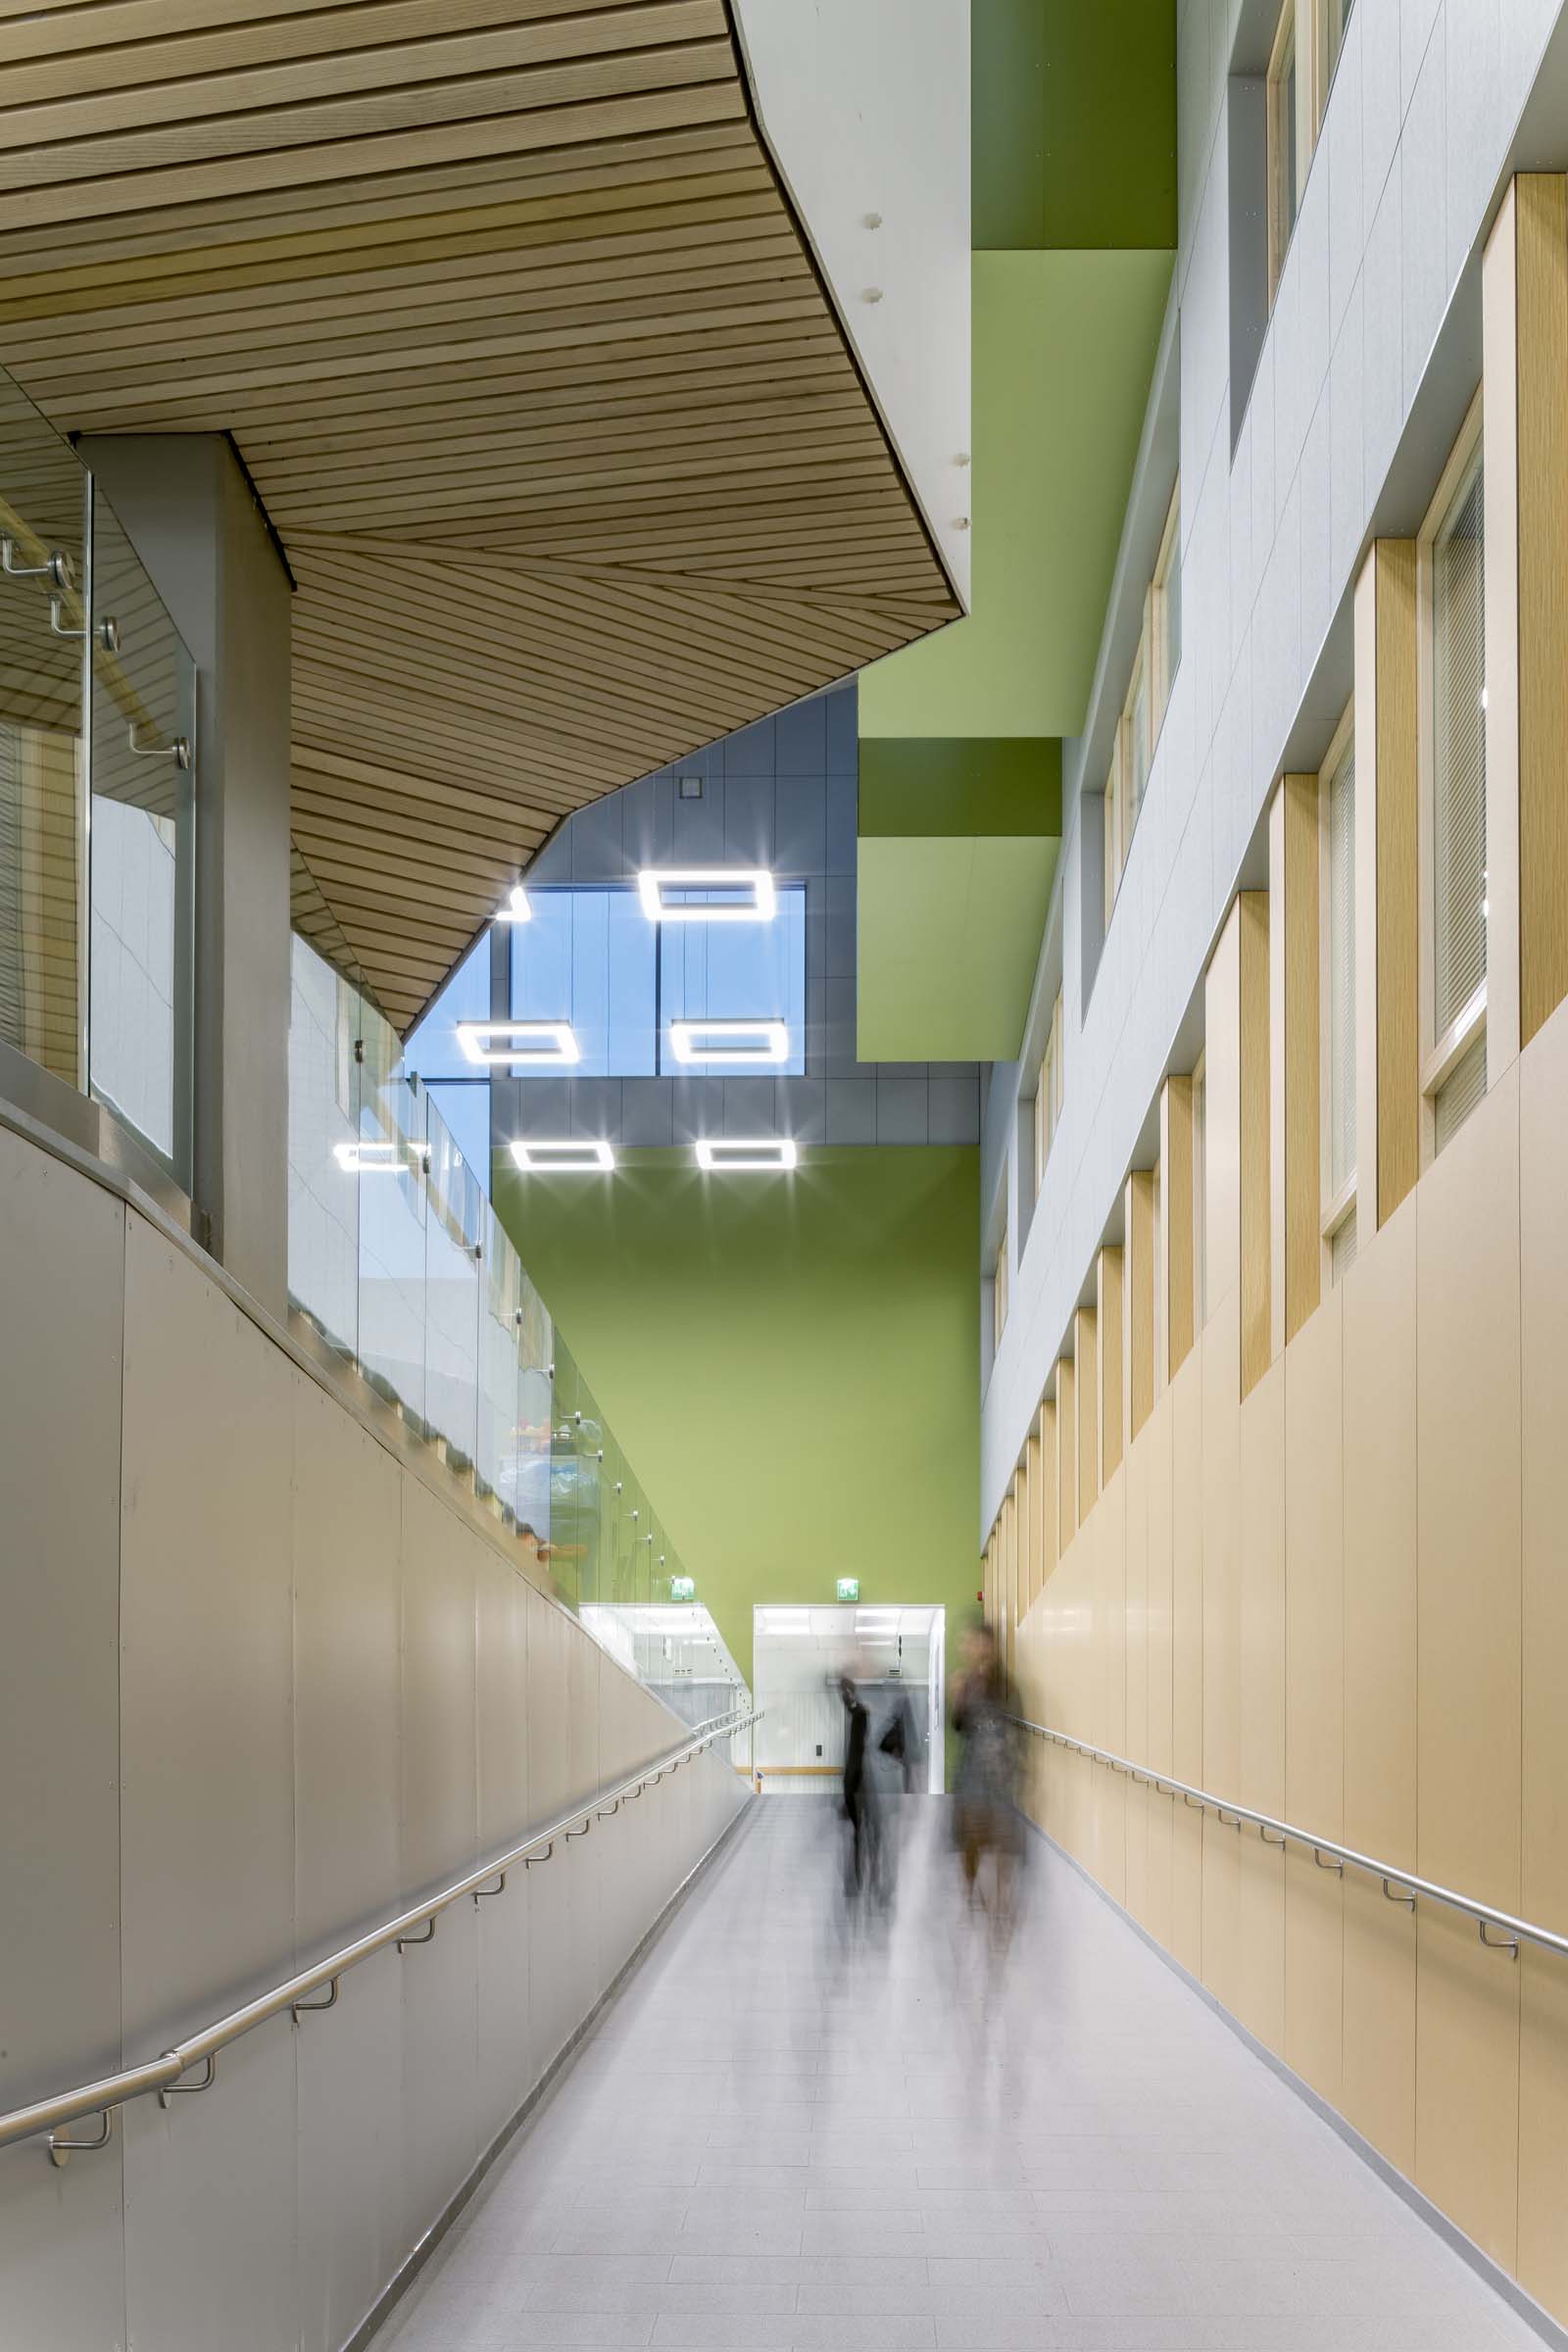 Keski-Pohjanmaan keskussairaala M- ja Y-siivet, käytävä, vihreä päätyseinä ja portaiden alaosan puupanelointi.